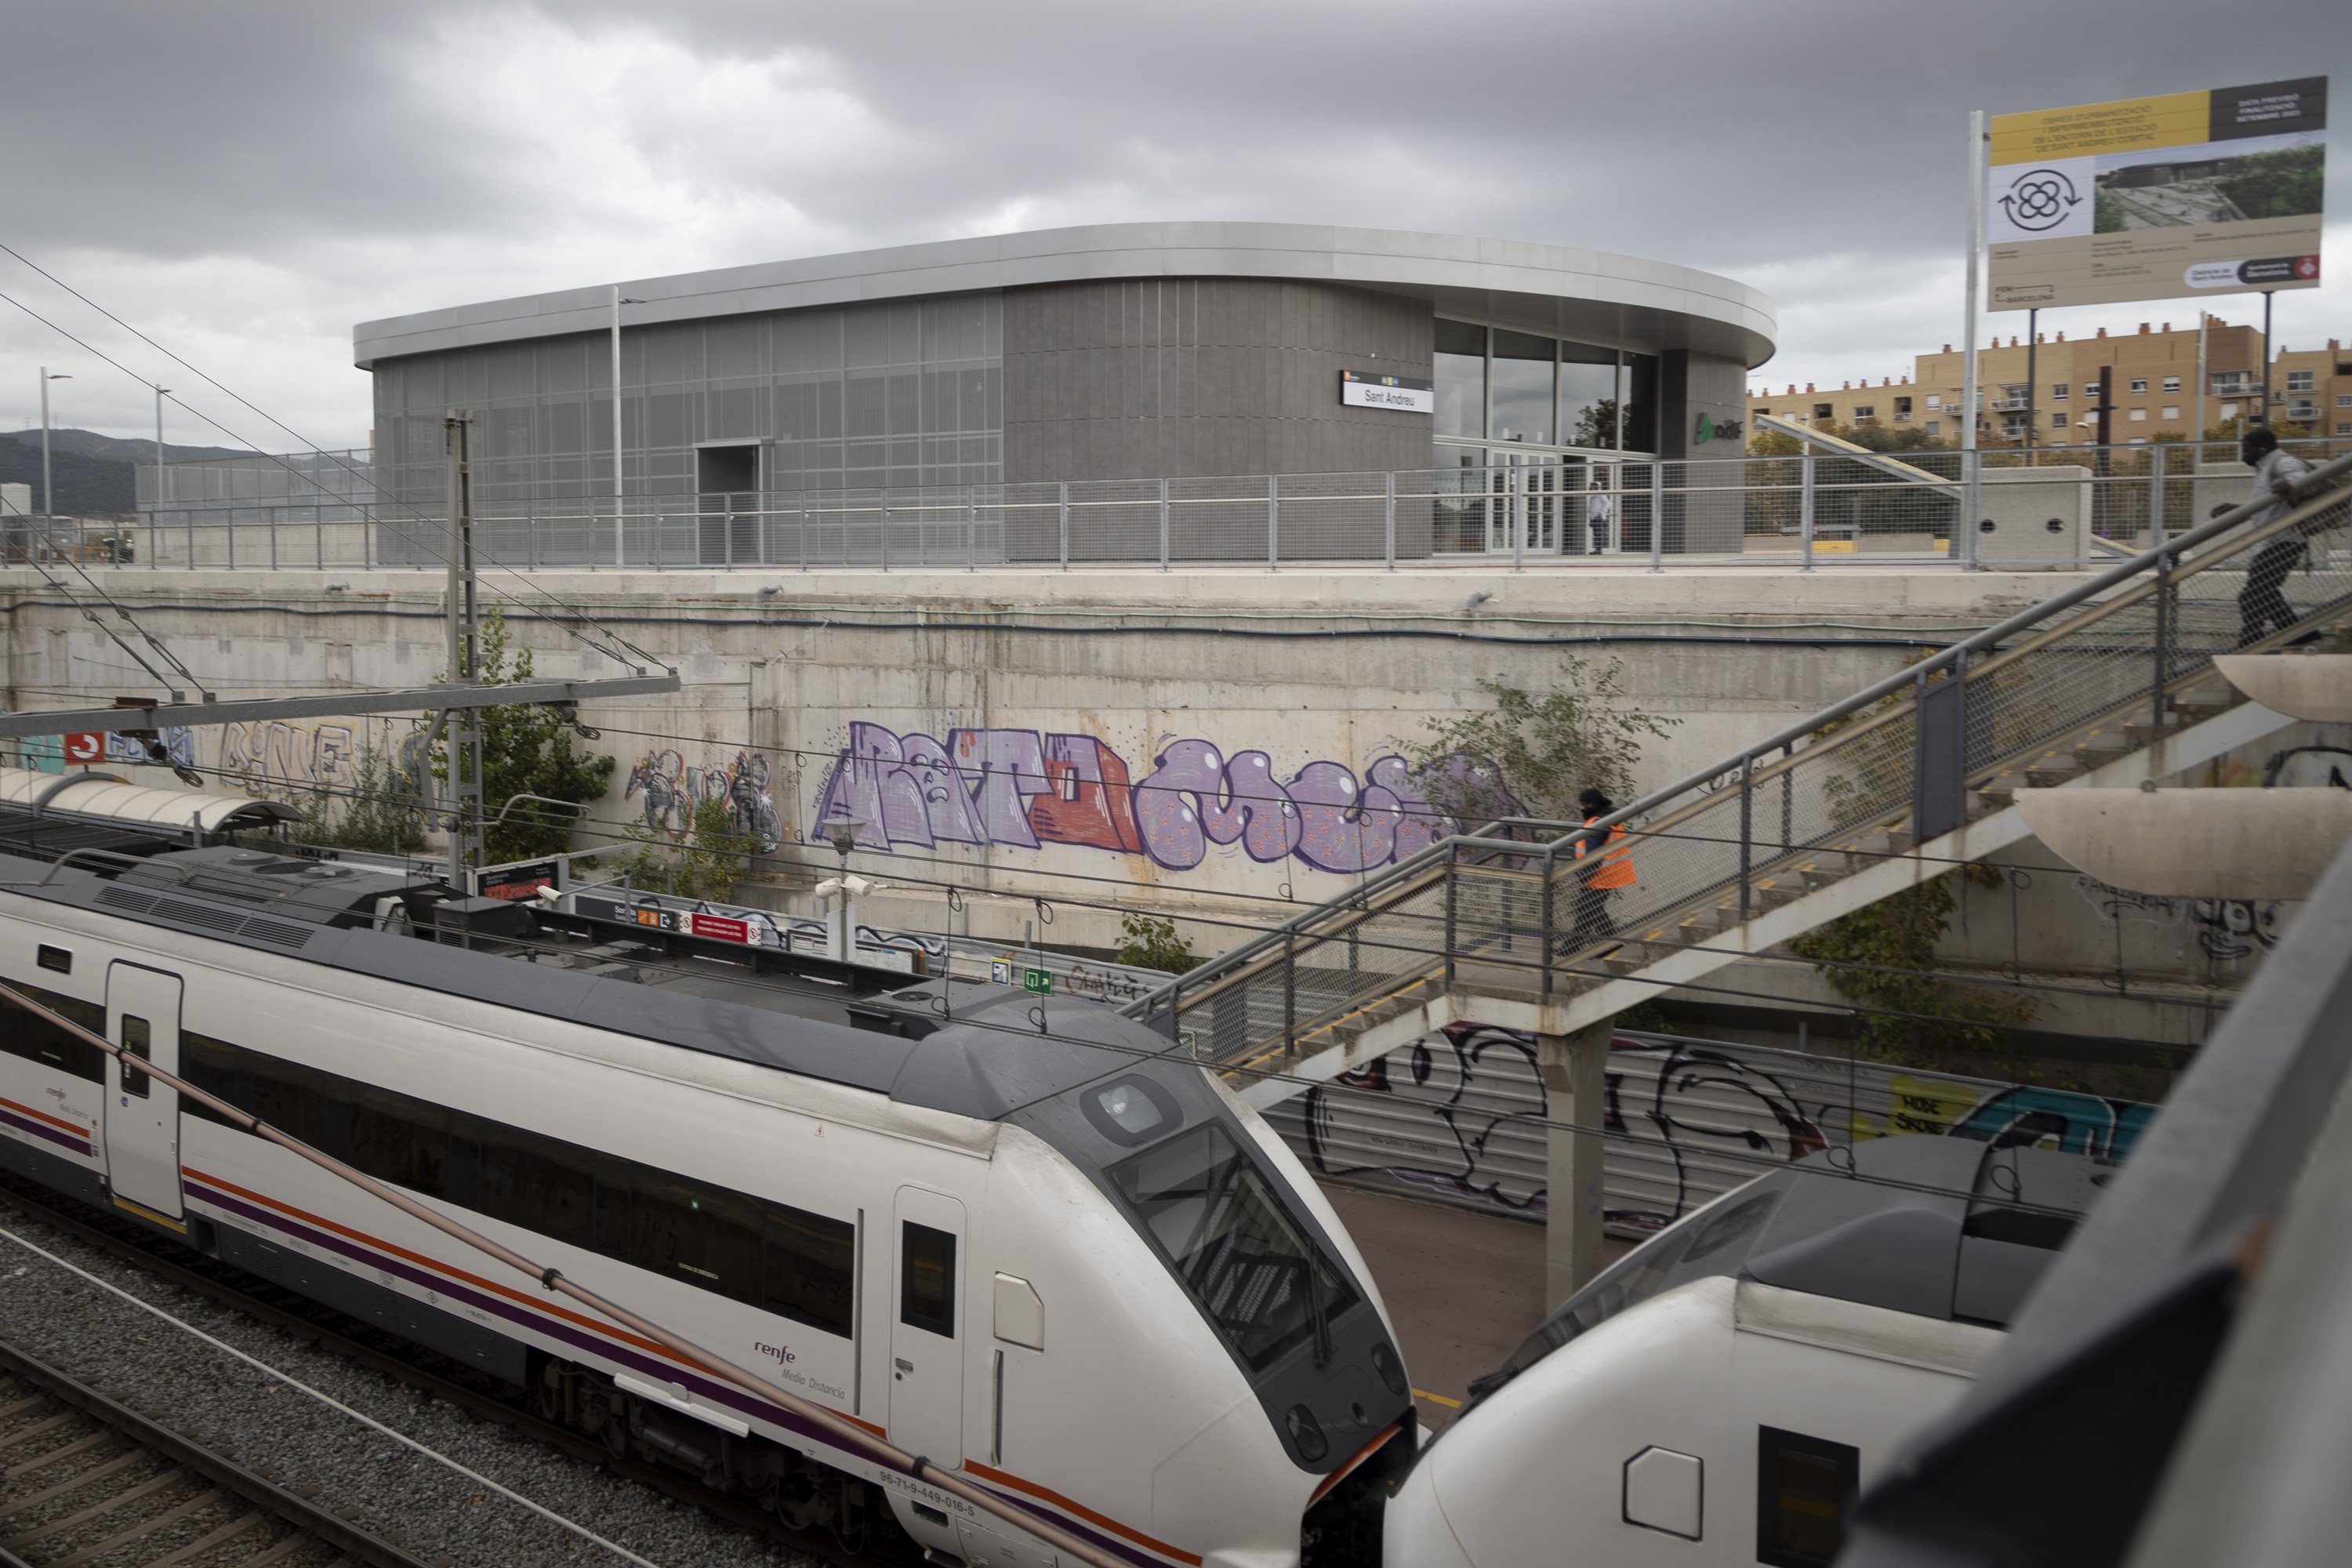 Deu preguntes (amb resposta) sobre la nova estació de tren de Sant Andreu